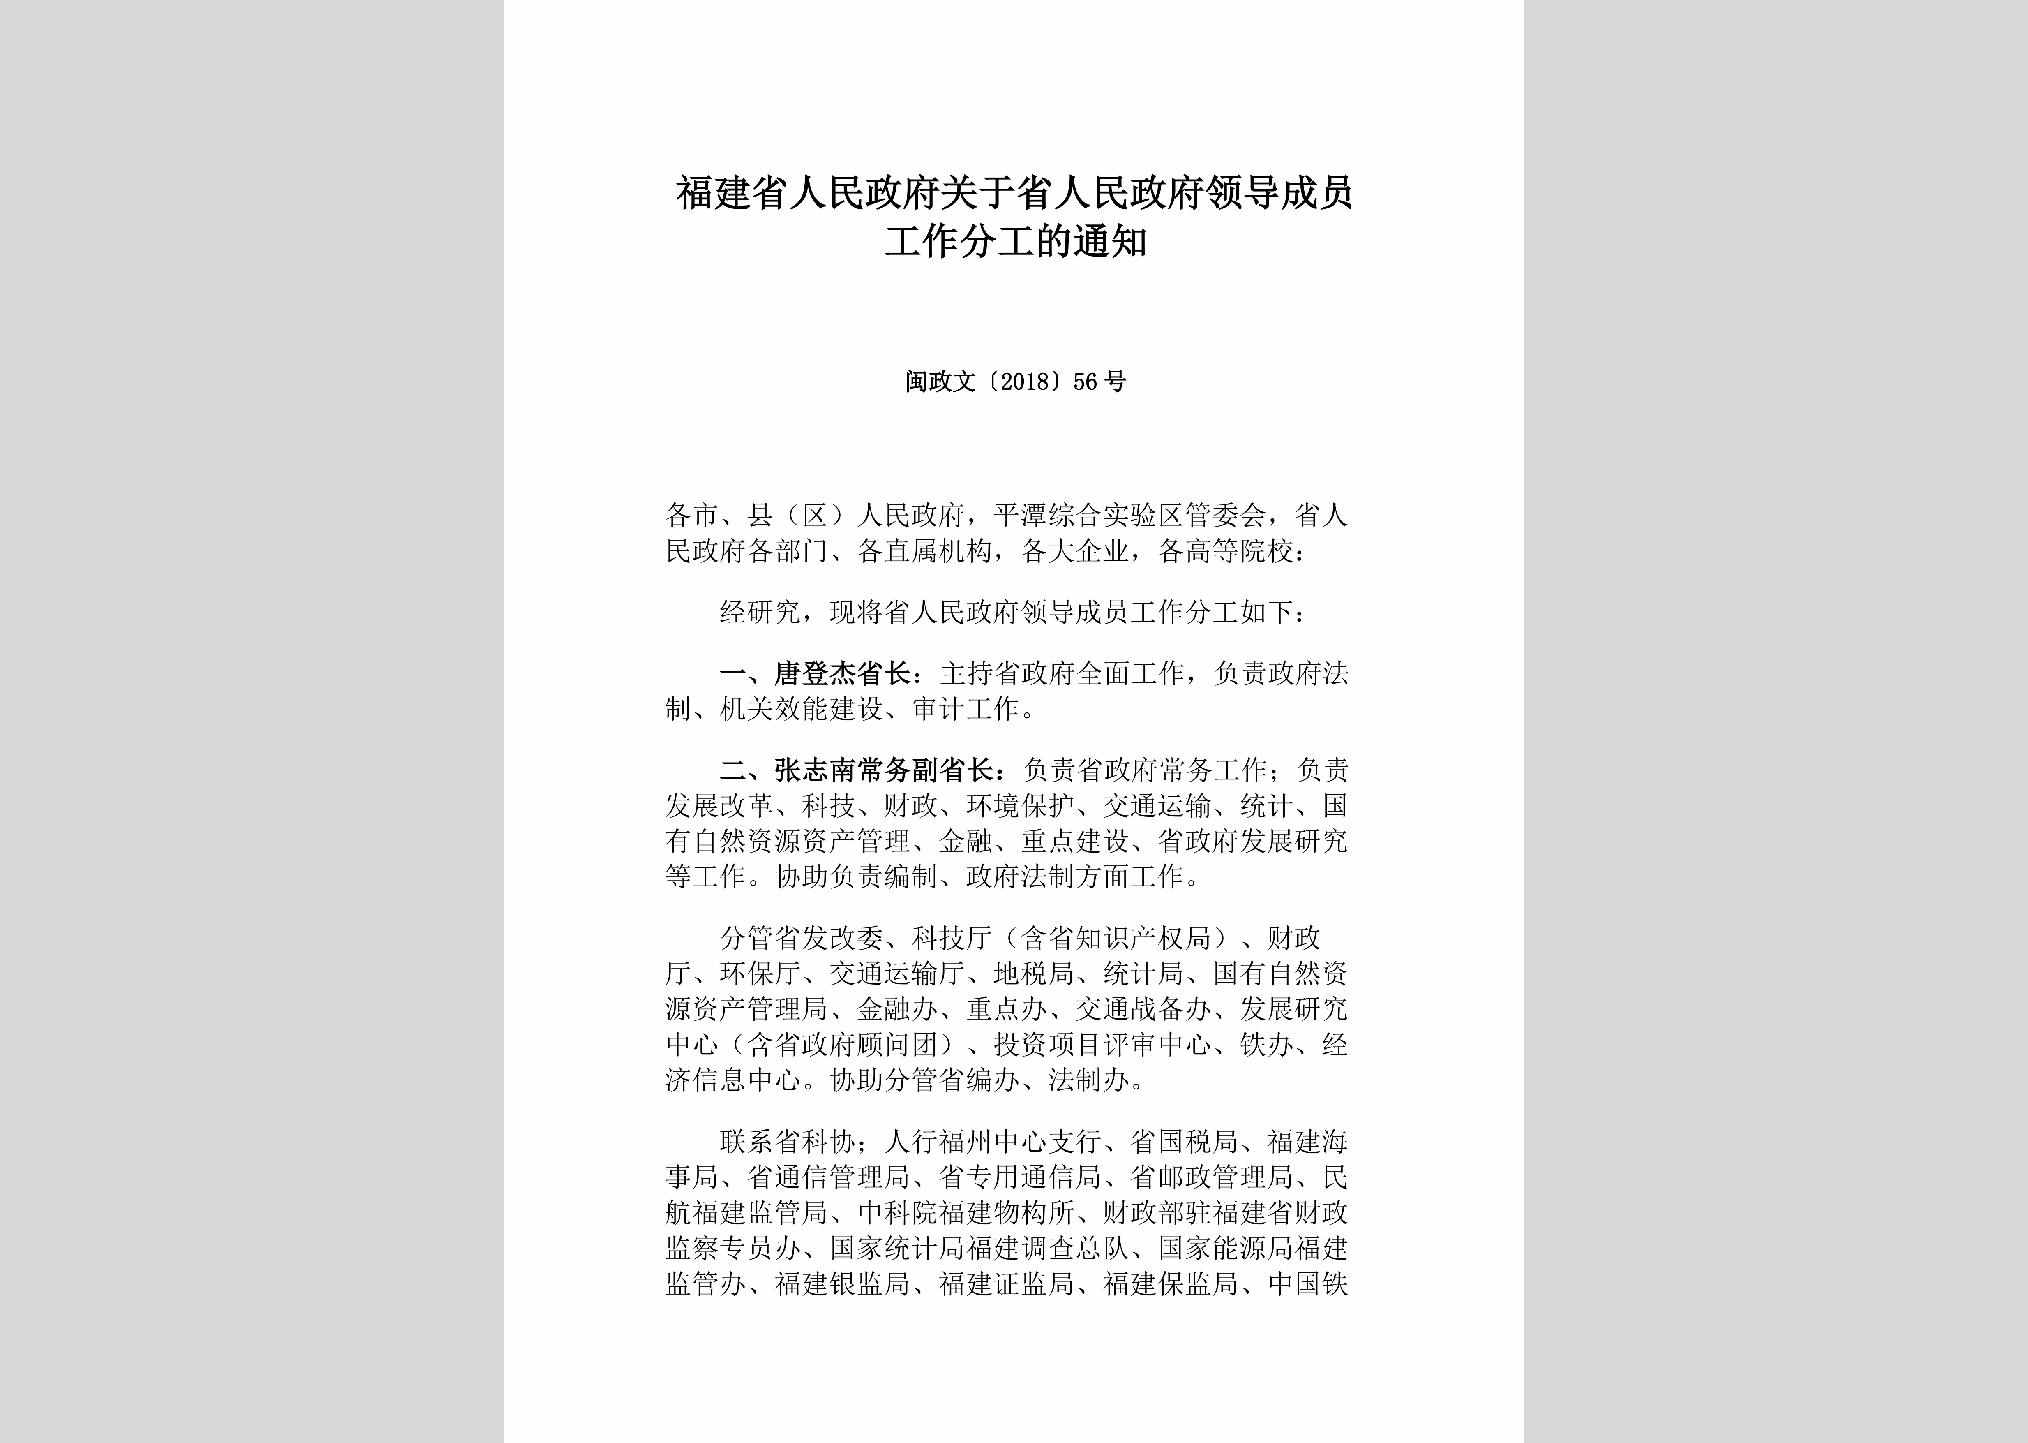 闽政文[2018]56号：福建省人民政府关于省人民政府领导成员工作分工的通知